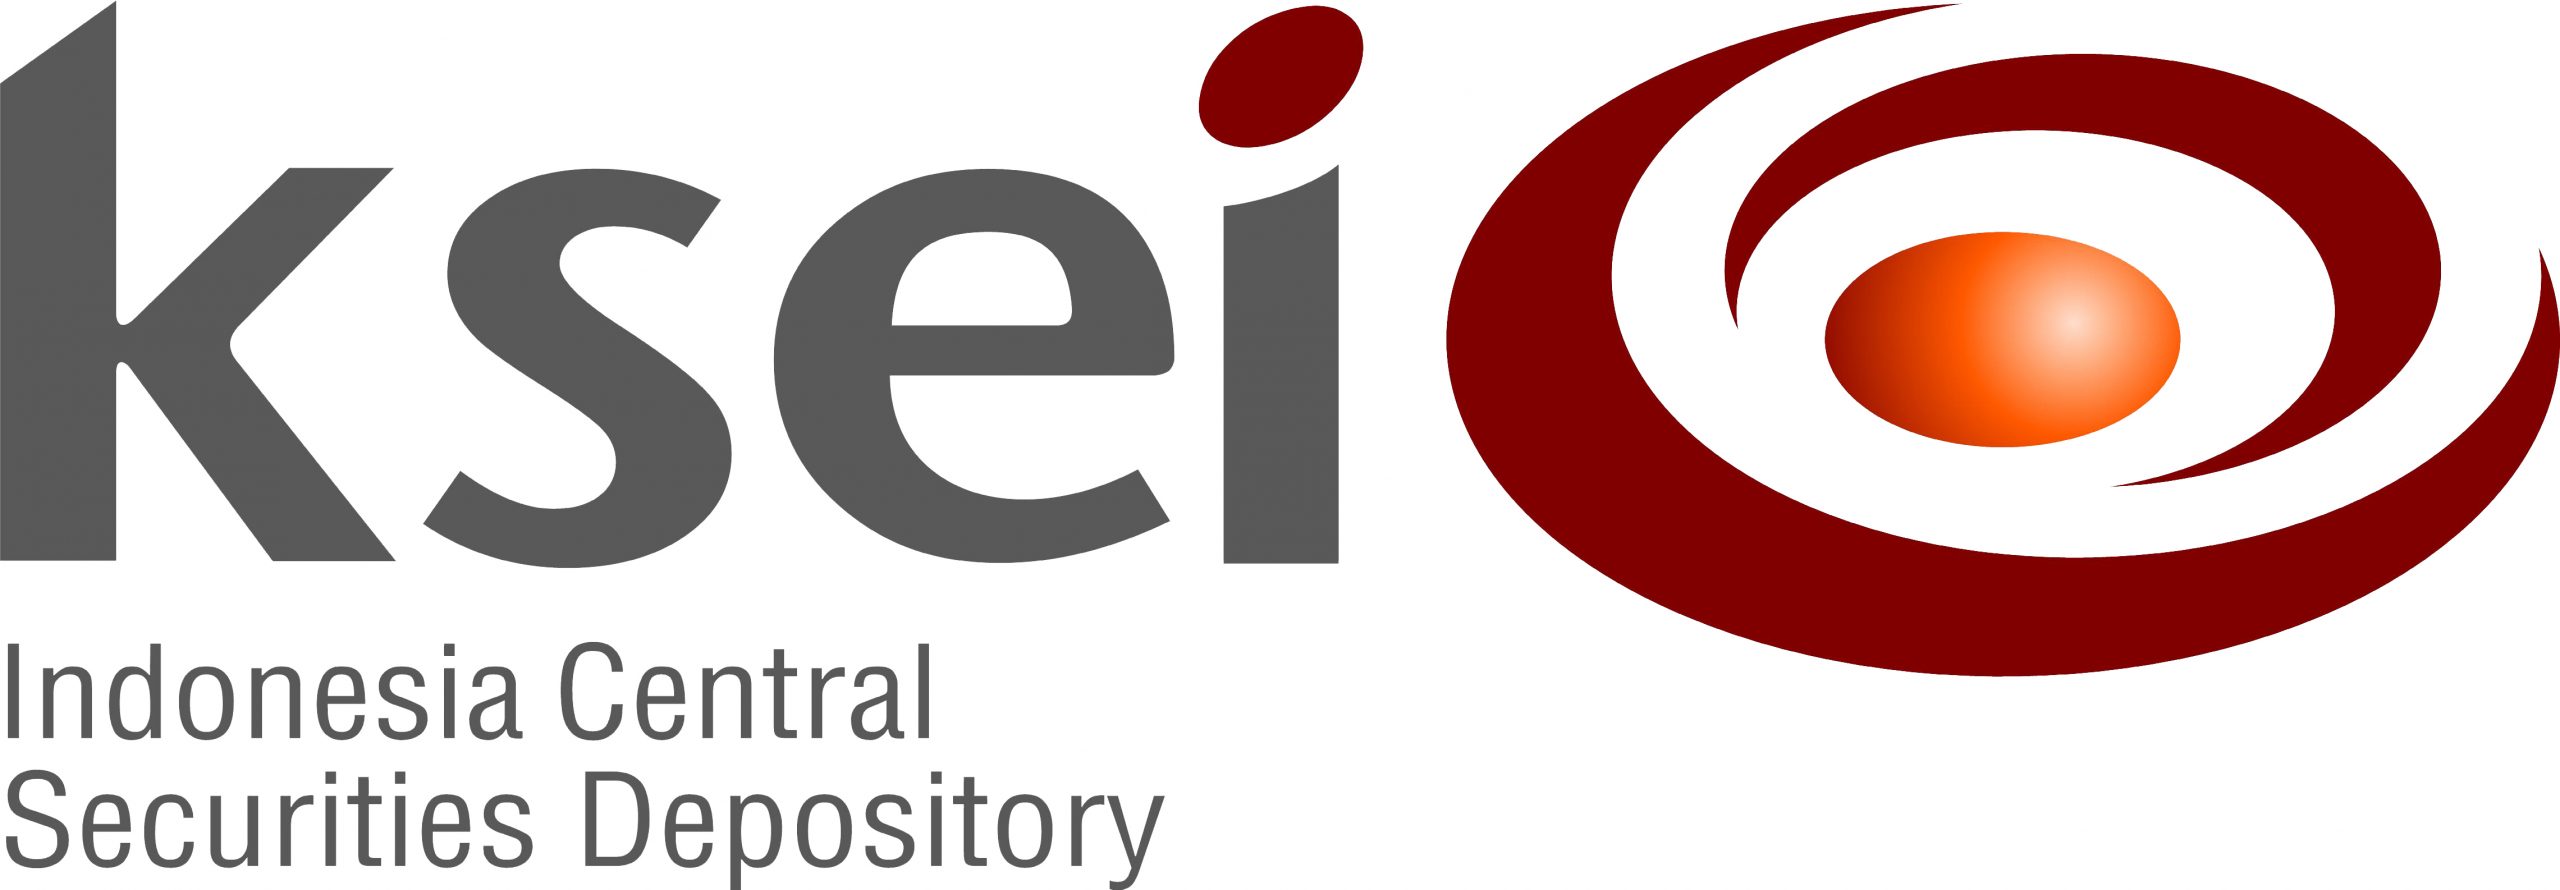 Logo_KSEI-scaled